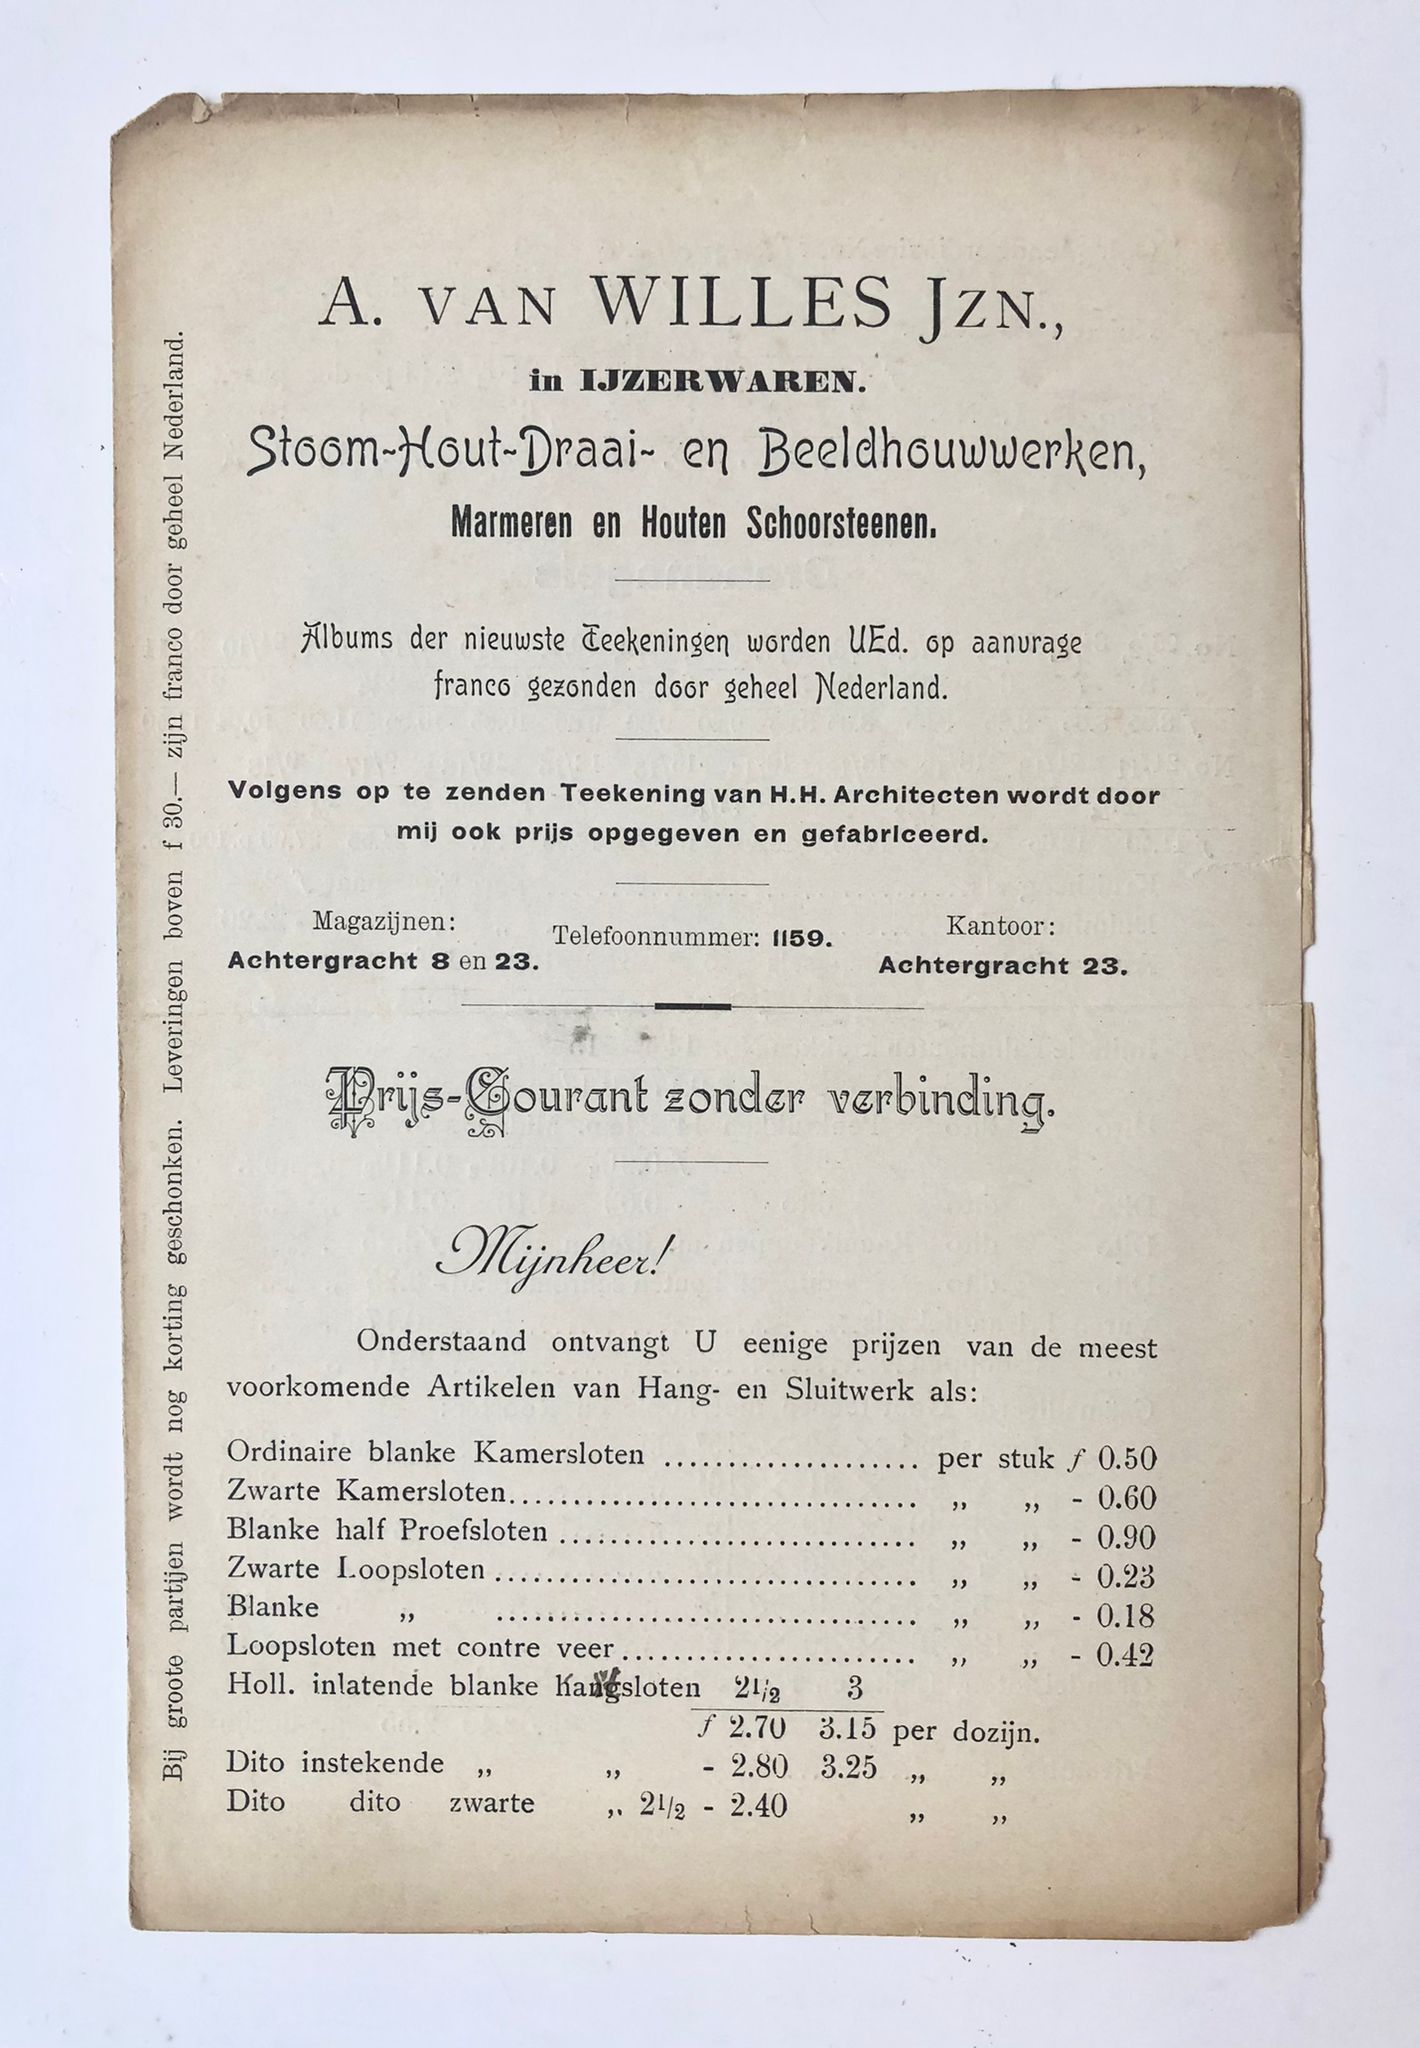 [Price list, prijscourant ca 1900] Prijscourant van Fa. A. van Willes Jzn, achtergracht 23, Amsterdam, in ijzerwaren en bouwartikelen, 4 pp., ca 1900.